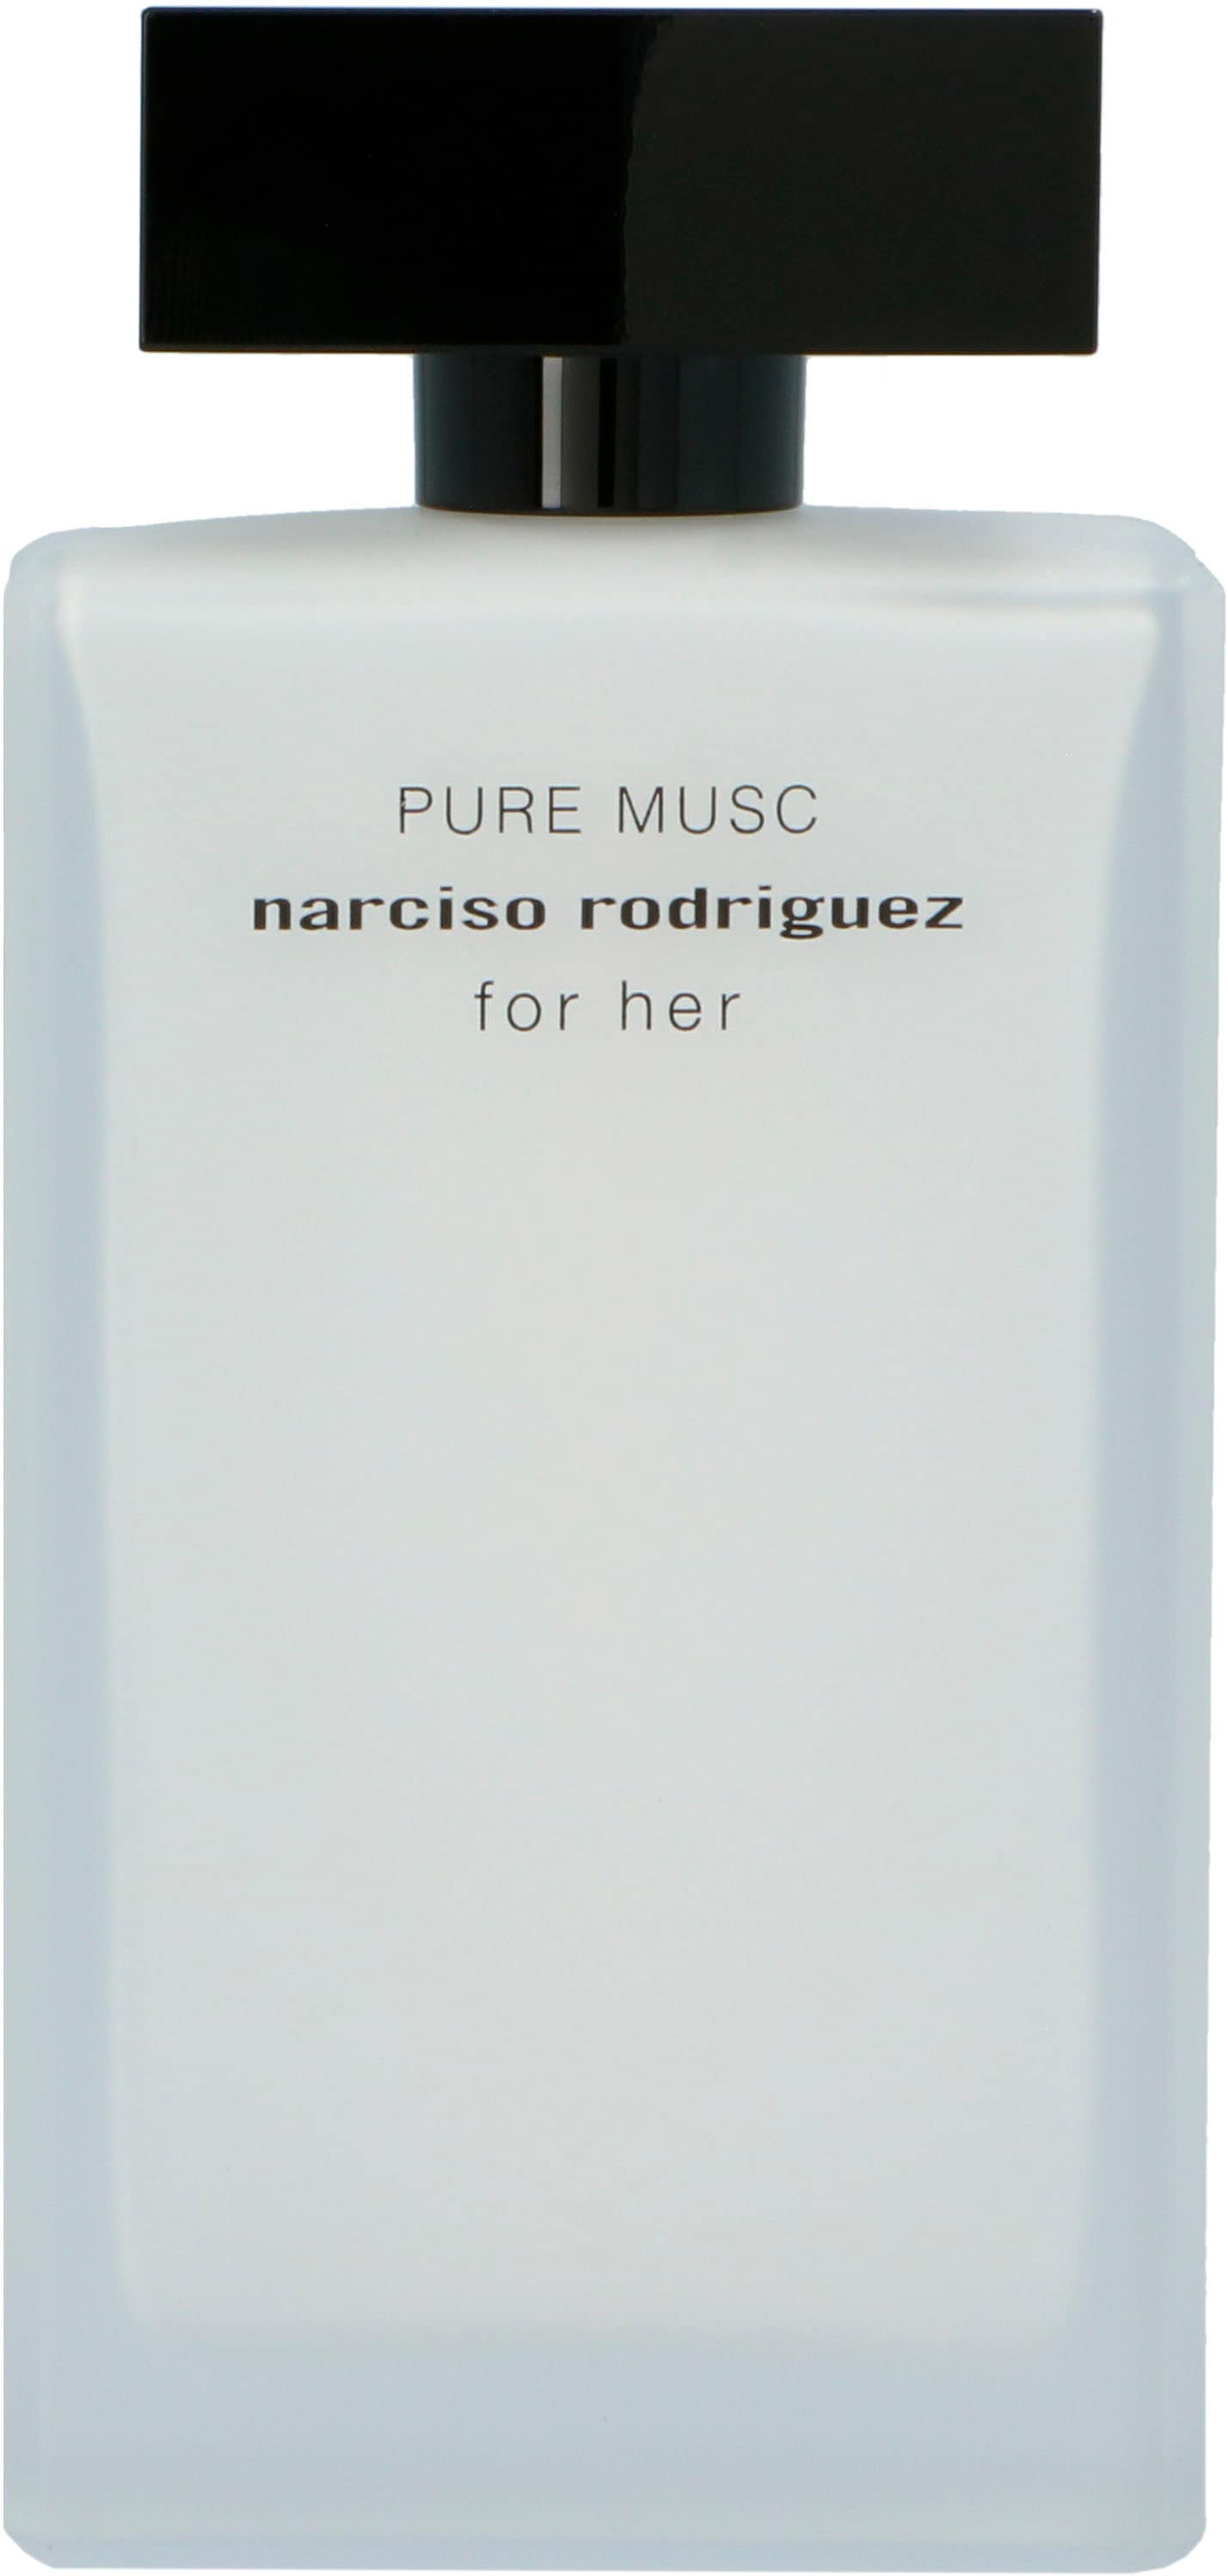 Eau de Parfum »Narciso Rodriguez for Her Pure Musc«